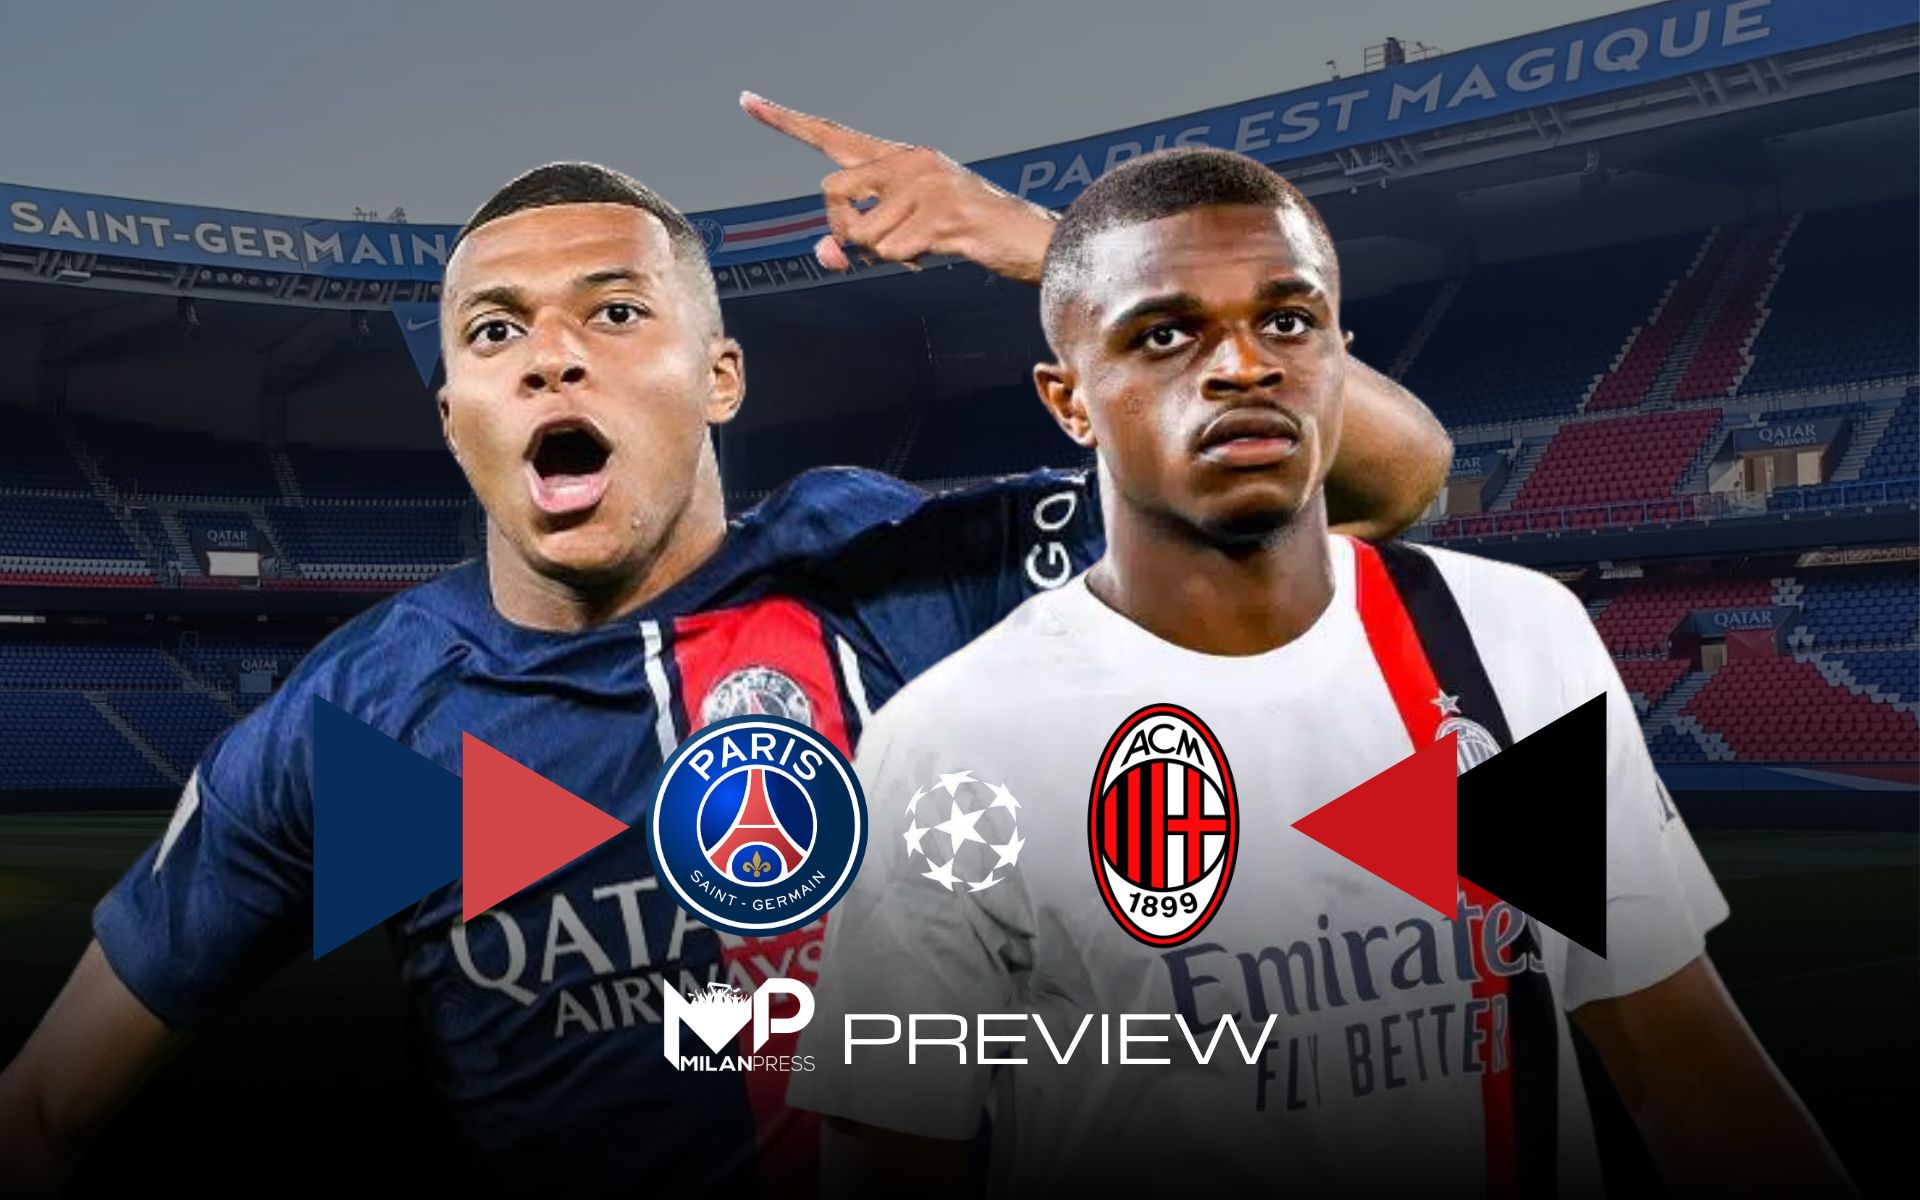 PSG-Milan Champions League Preview - MilanPress, robe dell'altro diavolo